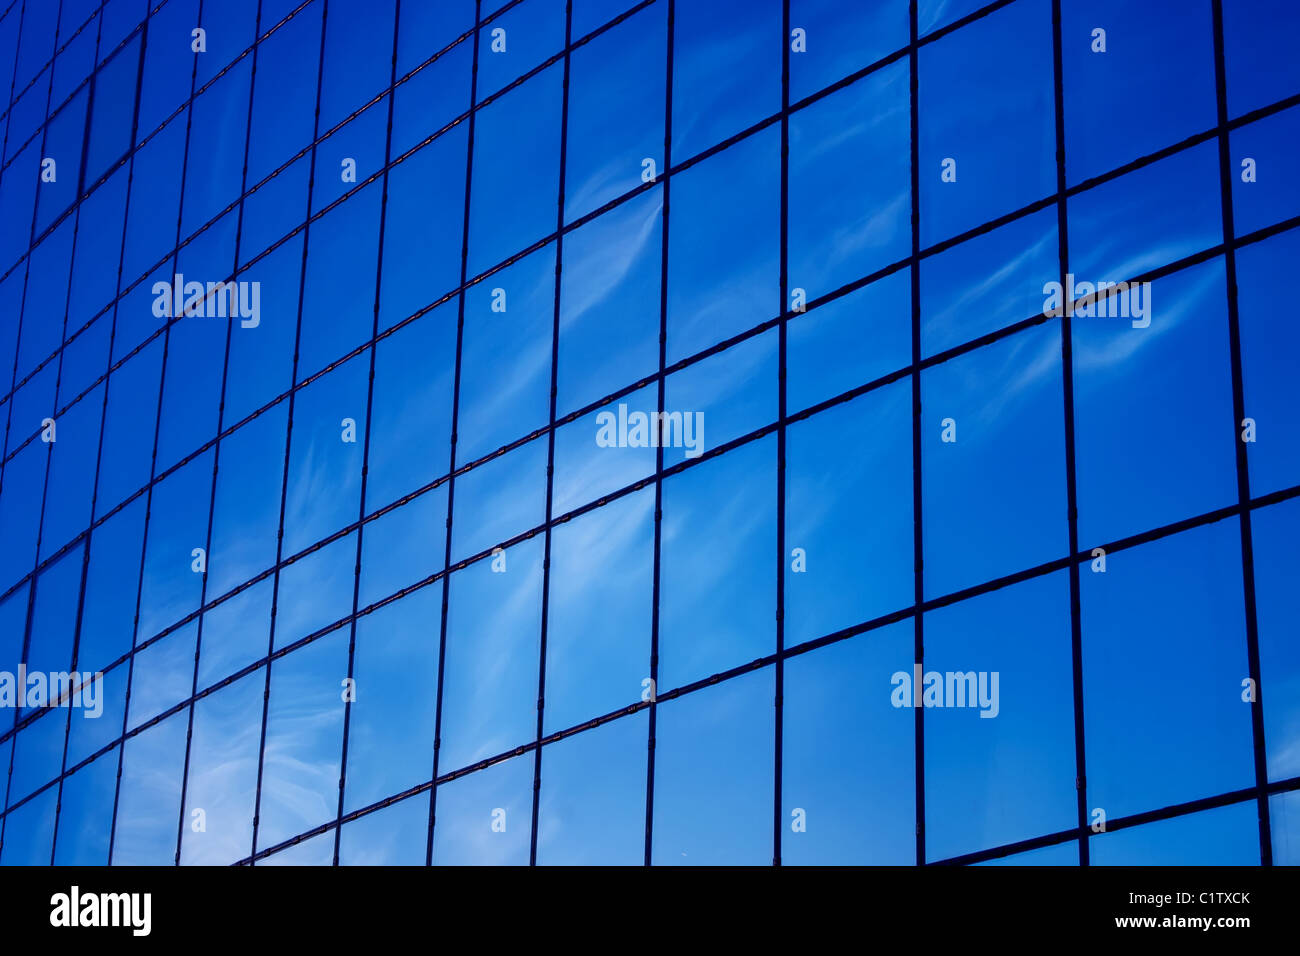 Moderni vetri da ufficio e riflessi blu del cielo nelle finestre Foto Stock